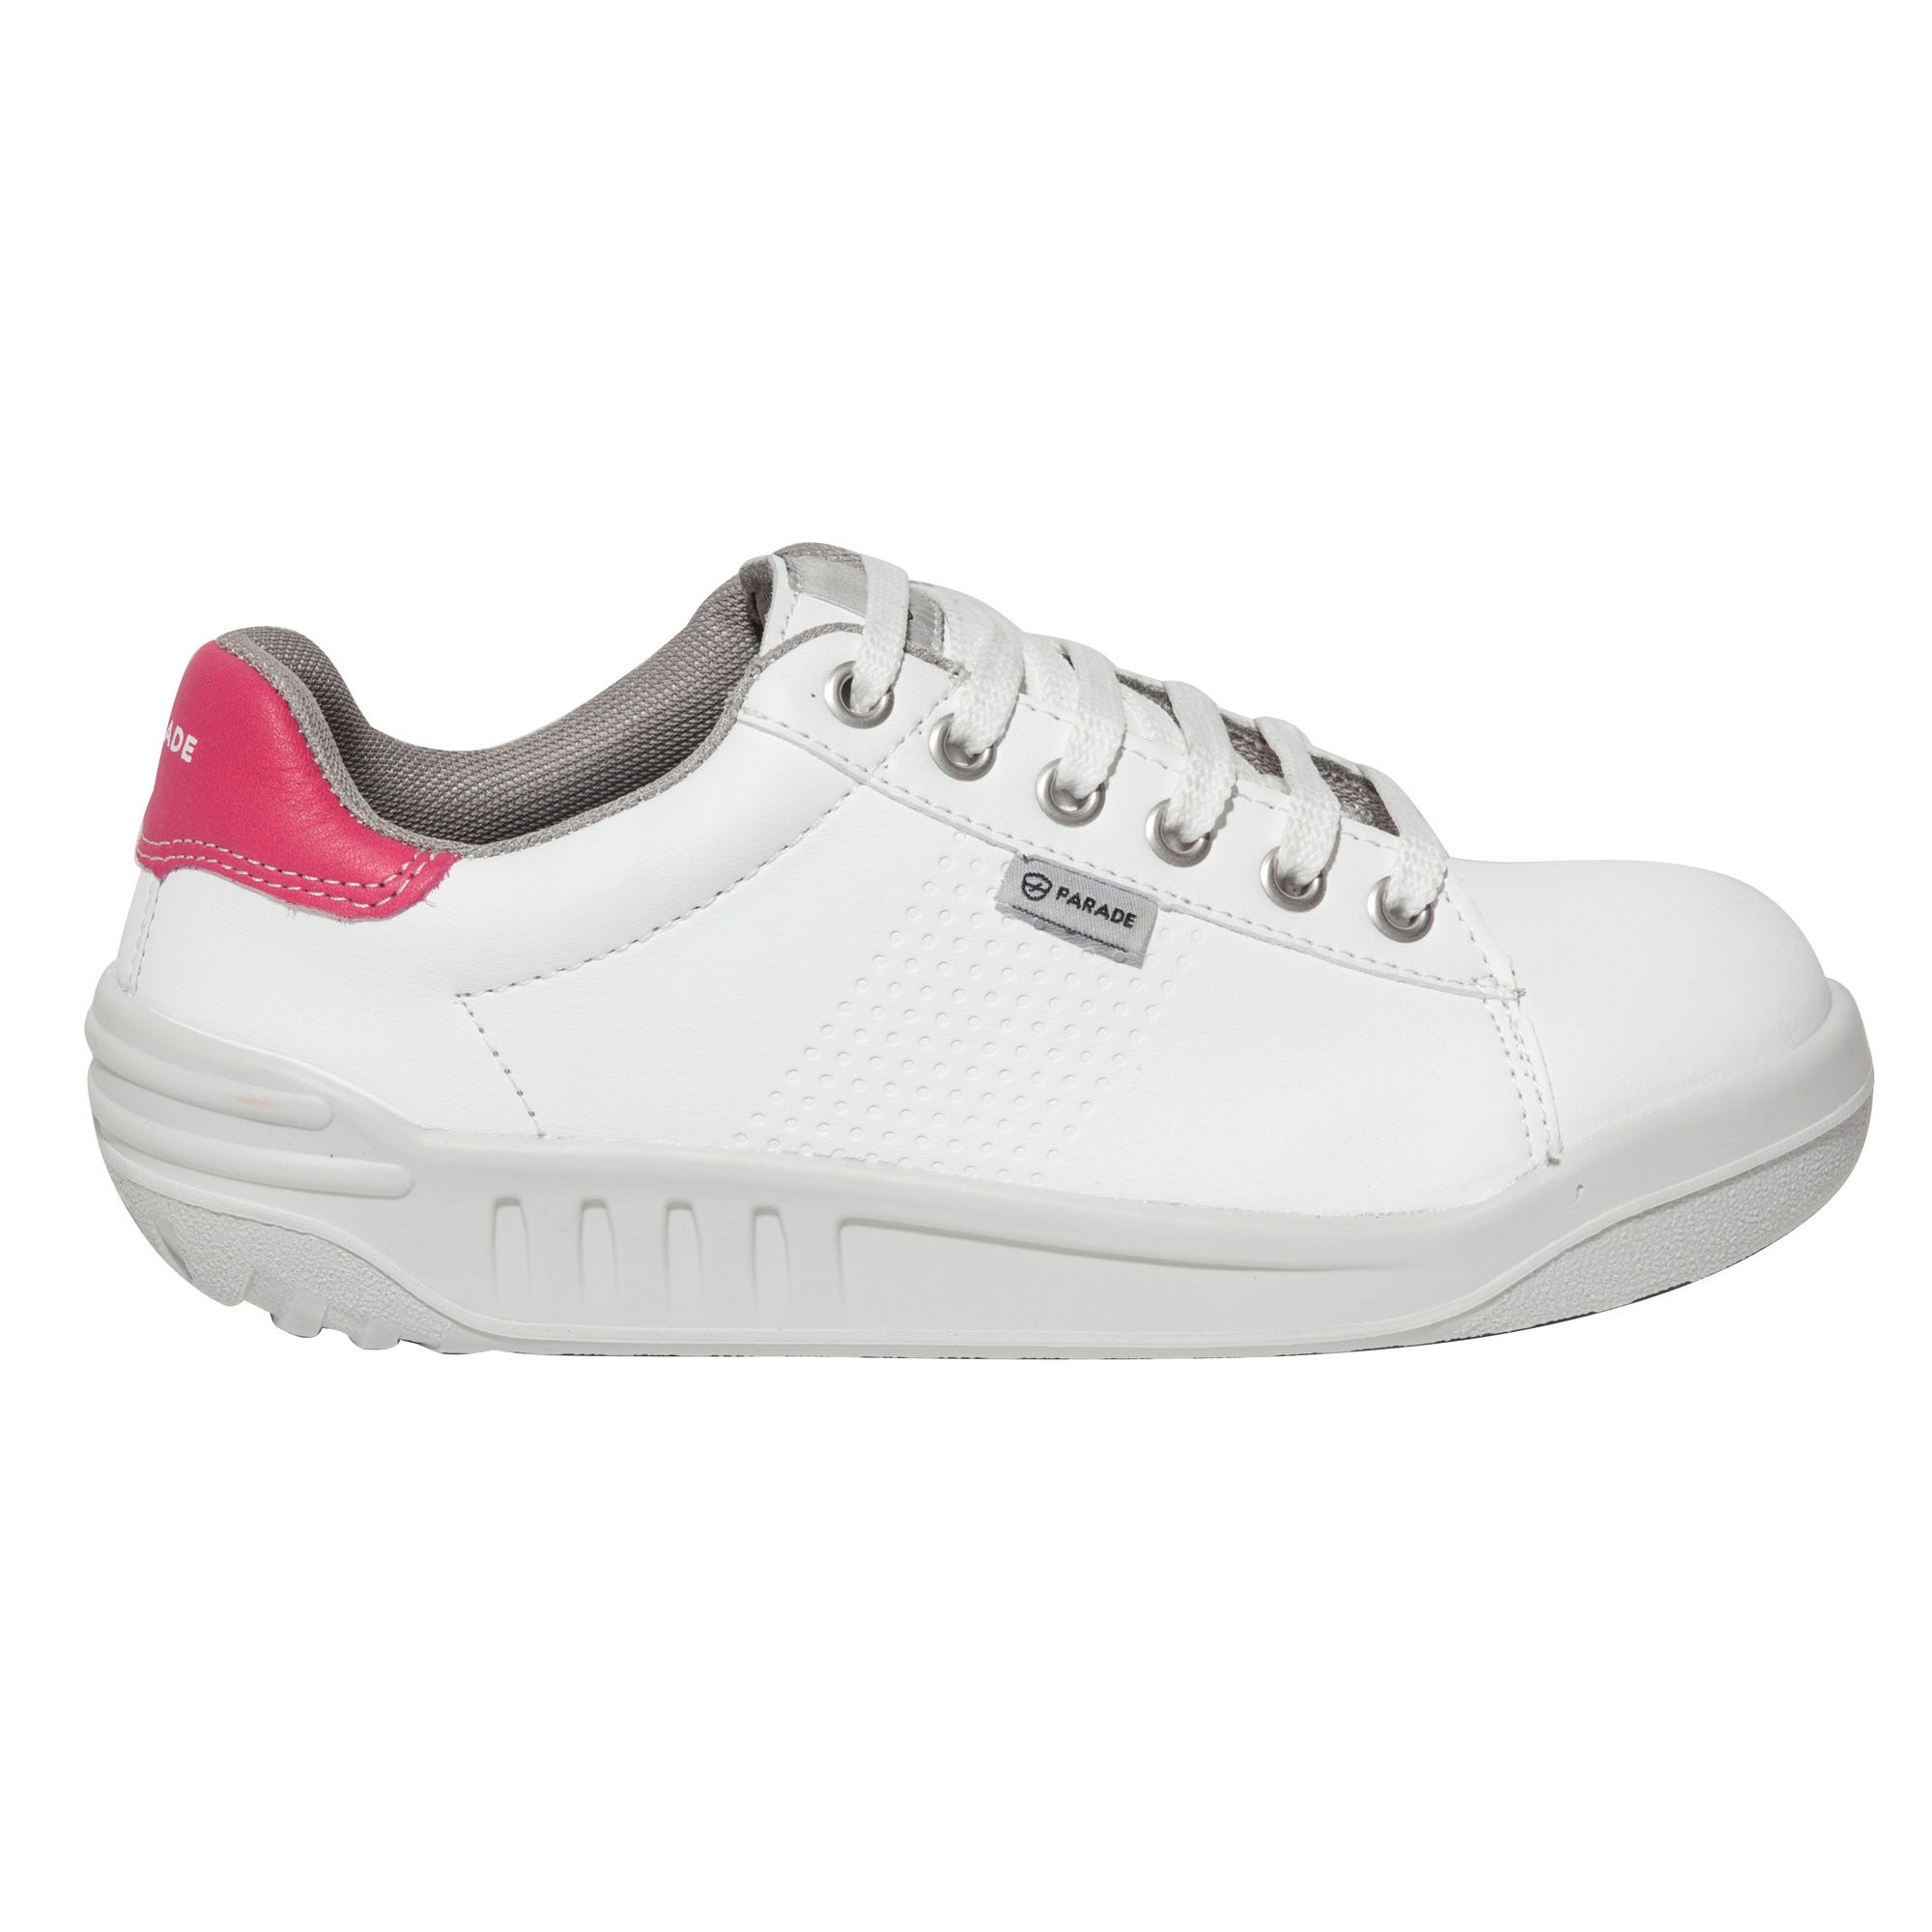 Chaussure de sécurité  basse sport S3 blanc/rose T.39 07jamma*88 96 - PARADE 0